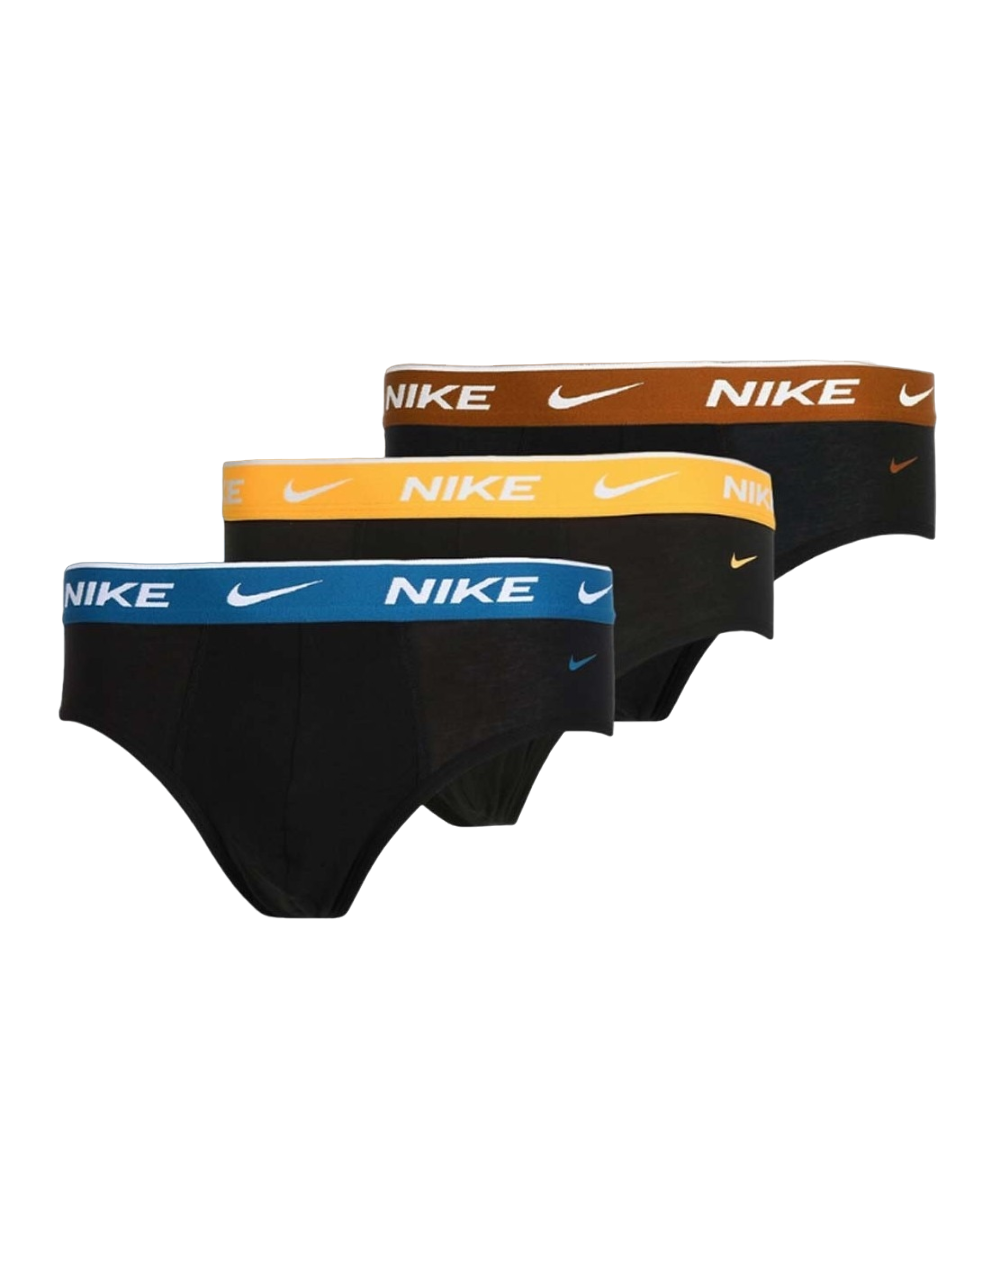 Nike intimo uomo Brief 0000KE1006 C48 confezione da 3 paia verde arancio coccio